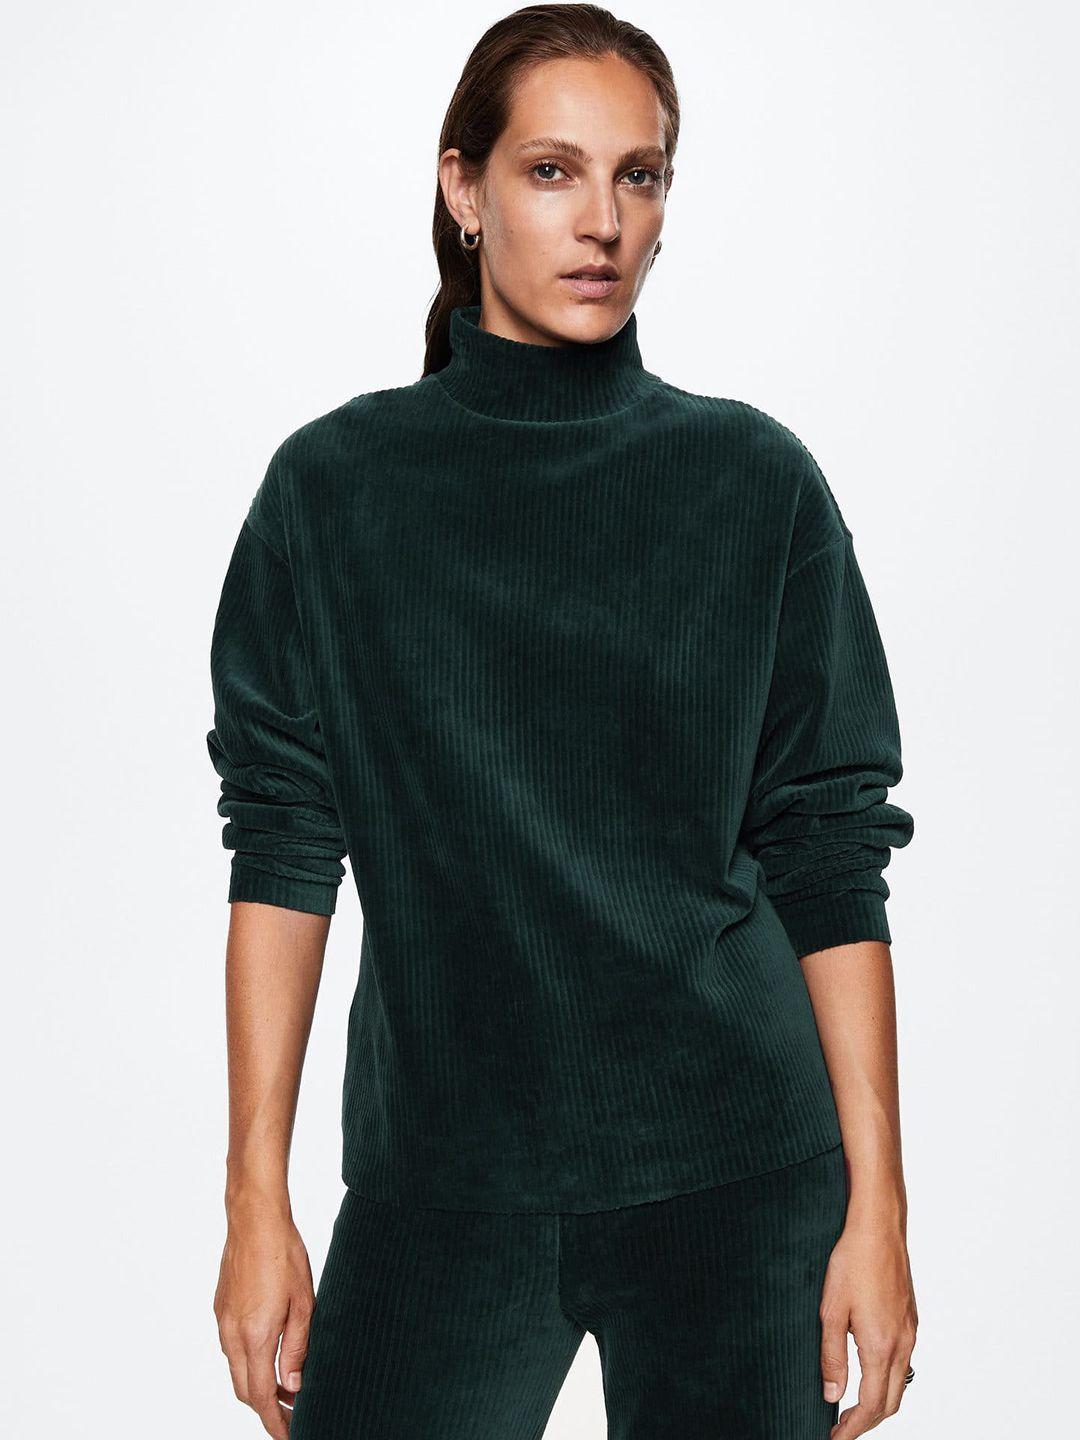 mango women teal green solid oversized corduroy sweatshirt